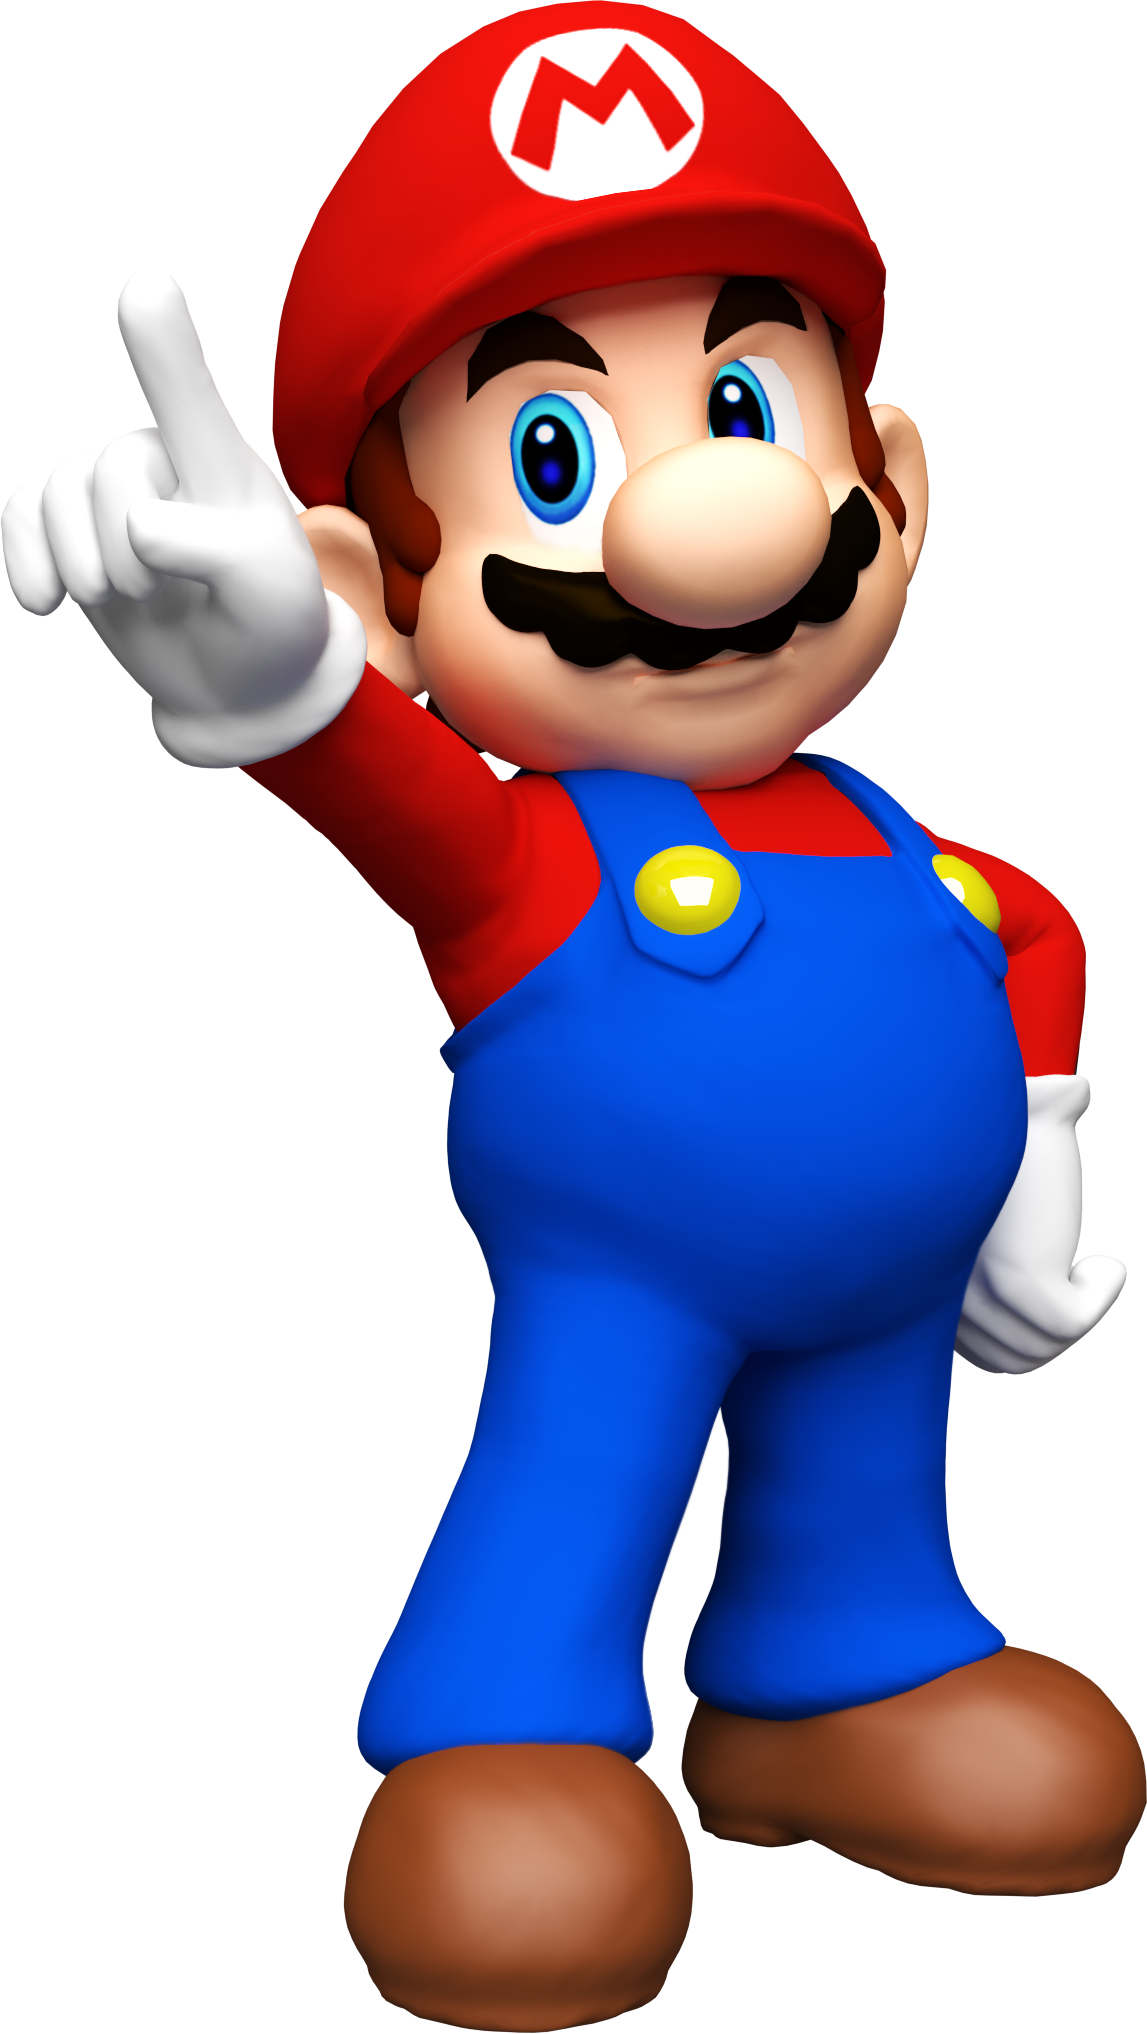 Супер Марио. Марио супер Марио. Супер Марио супермарио. Герои супер Марио Нинтендо.